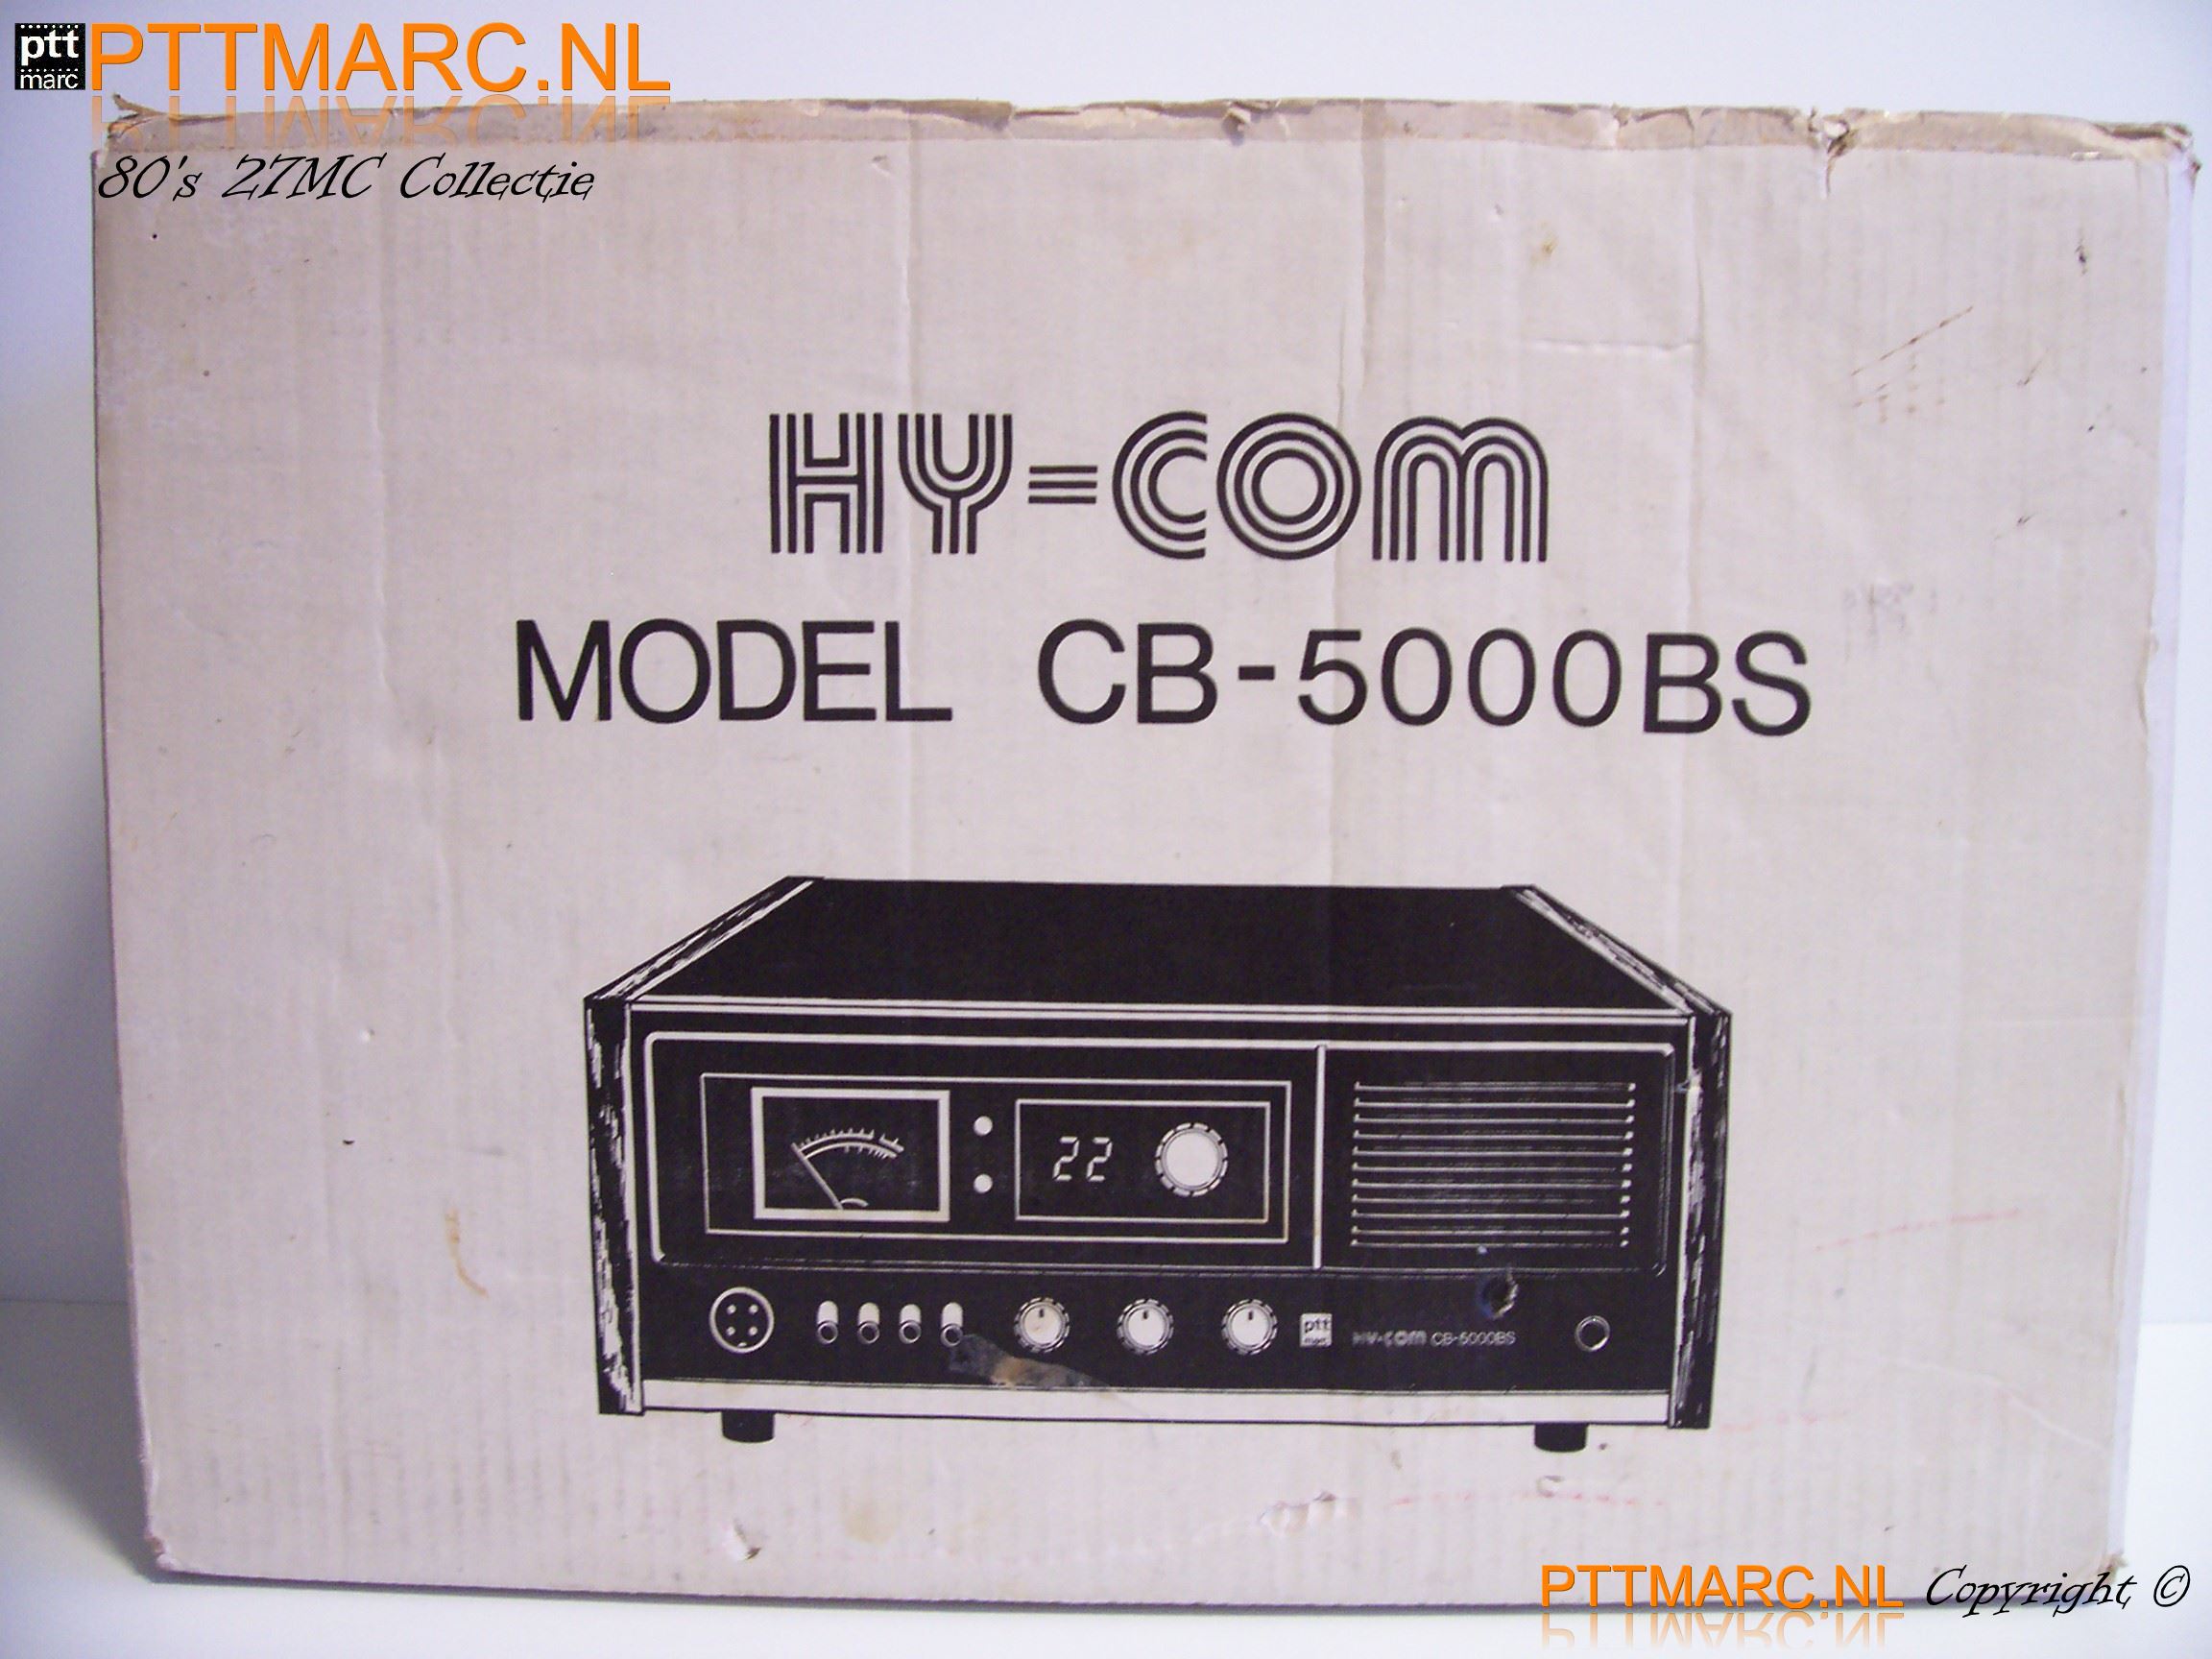 Hycom CB 5000